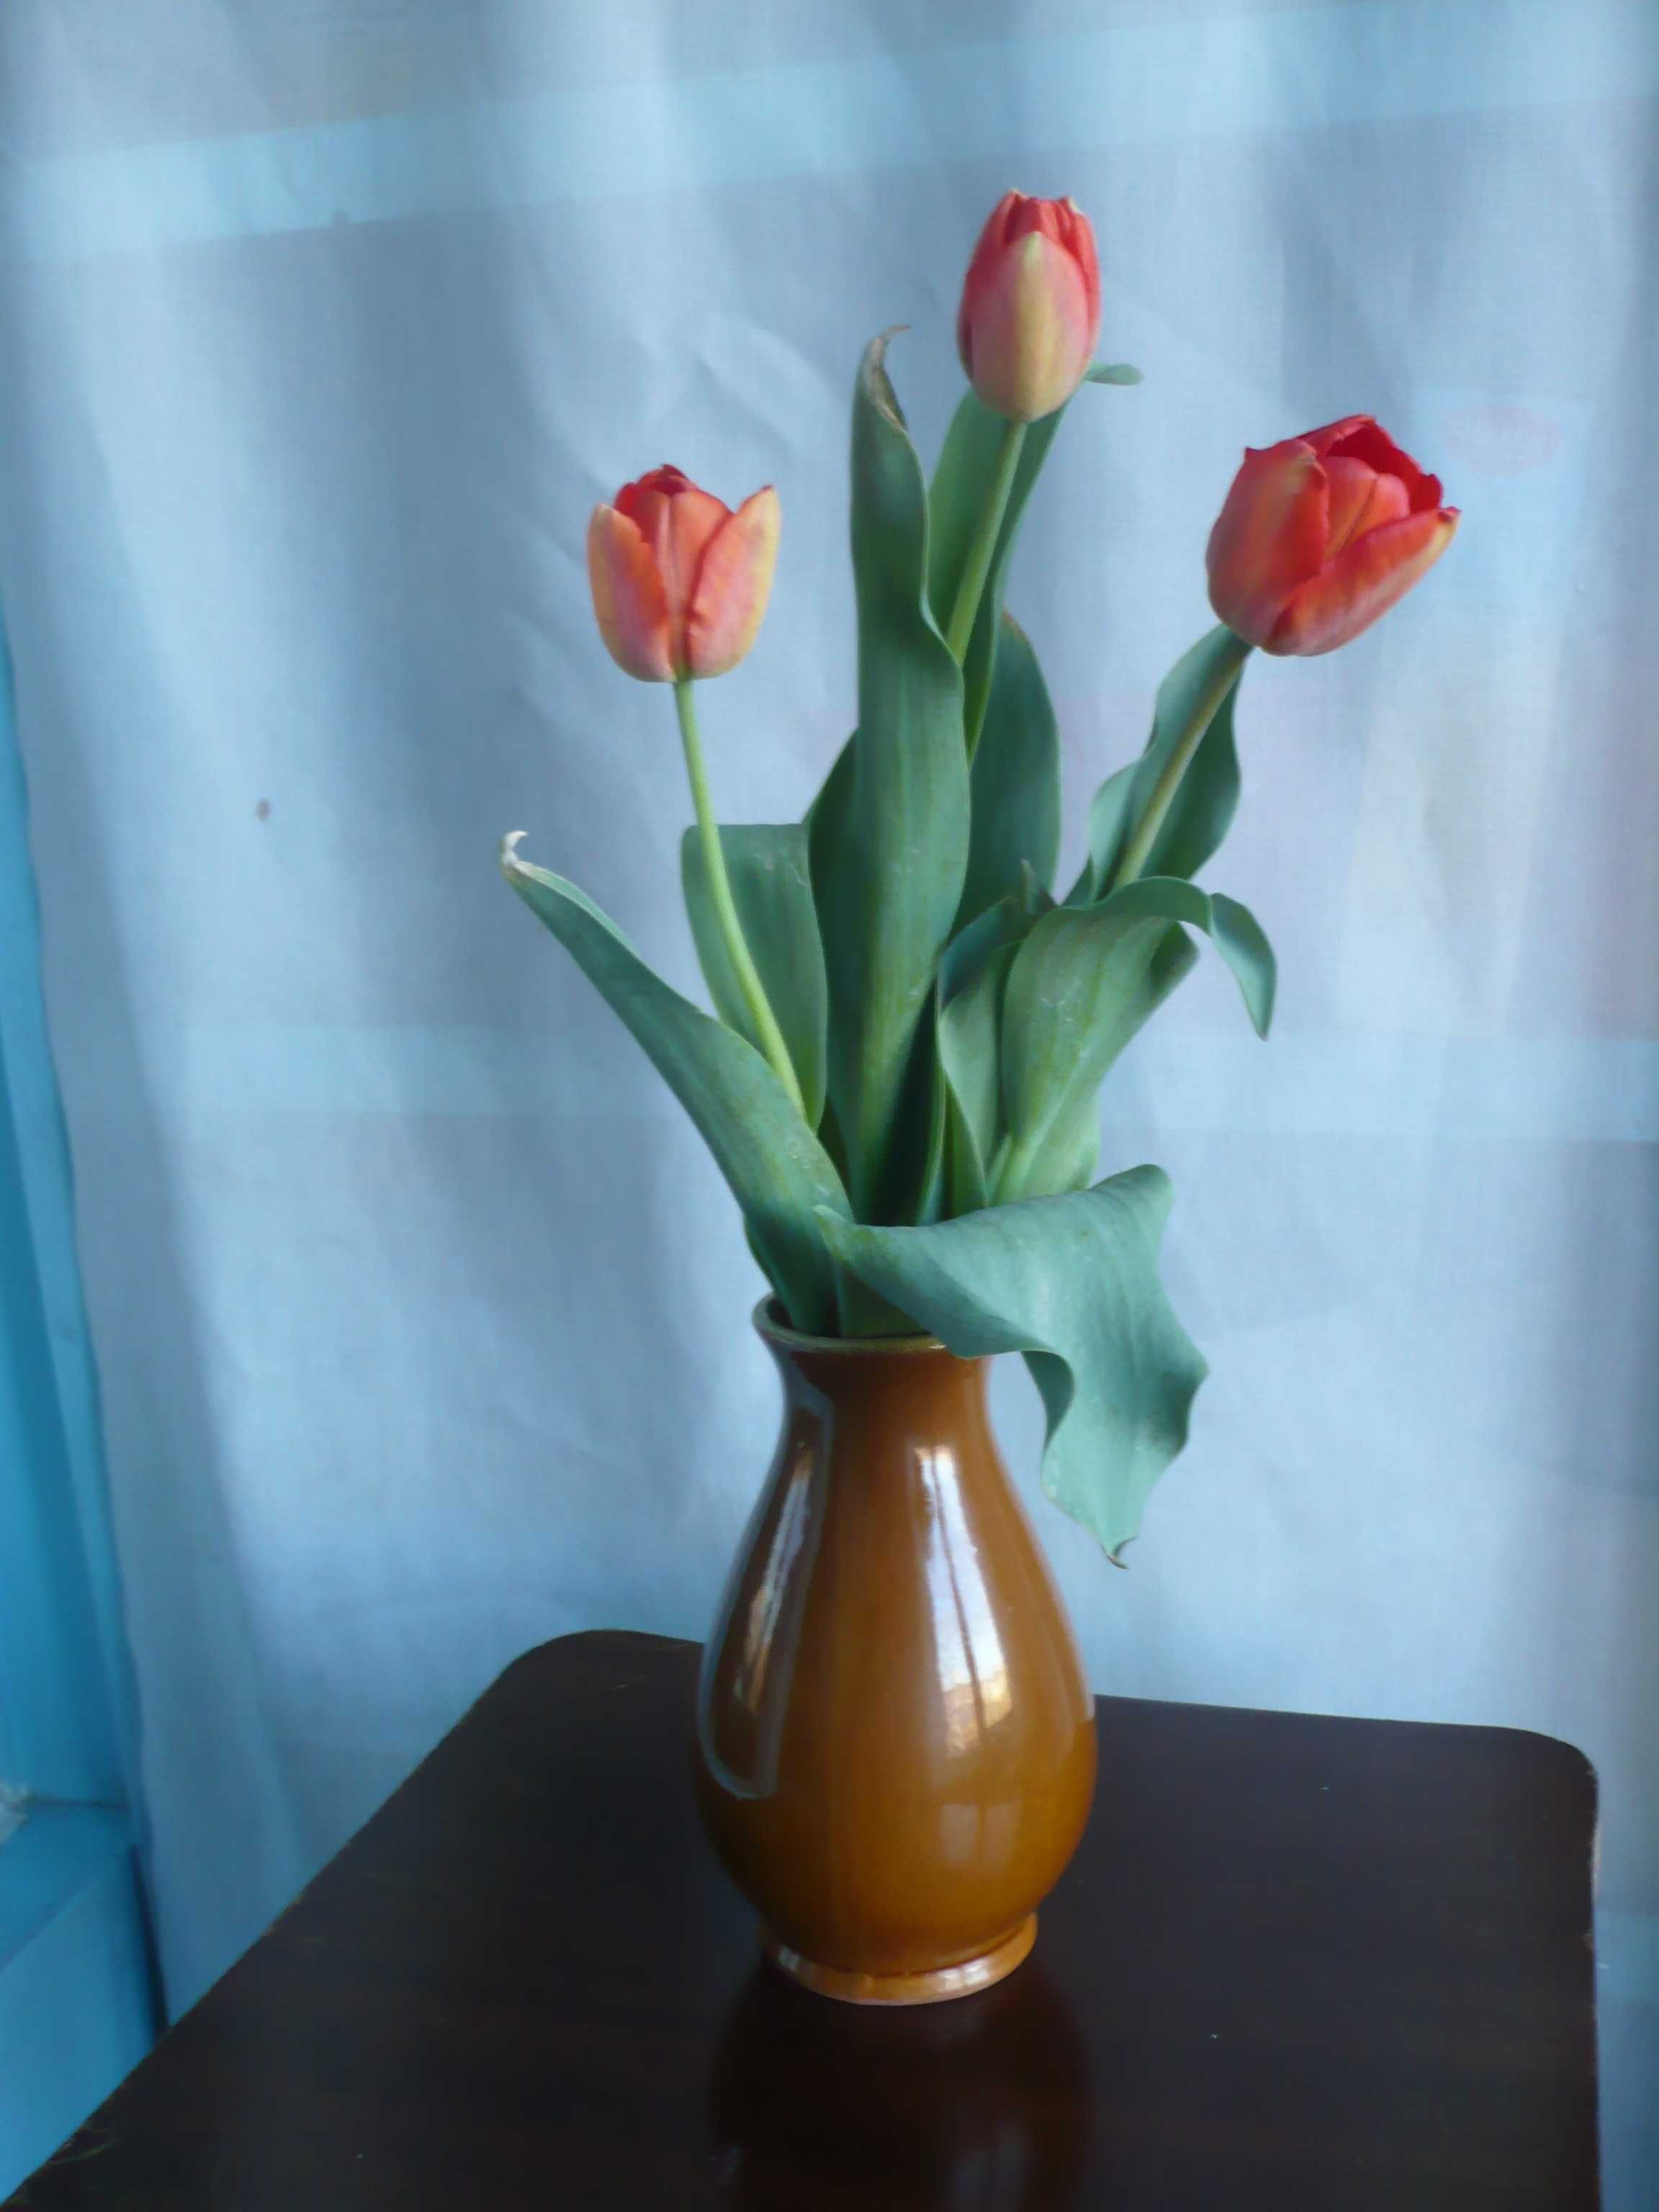 Красные тюльпаны для подарка